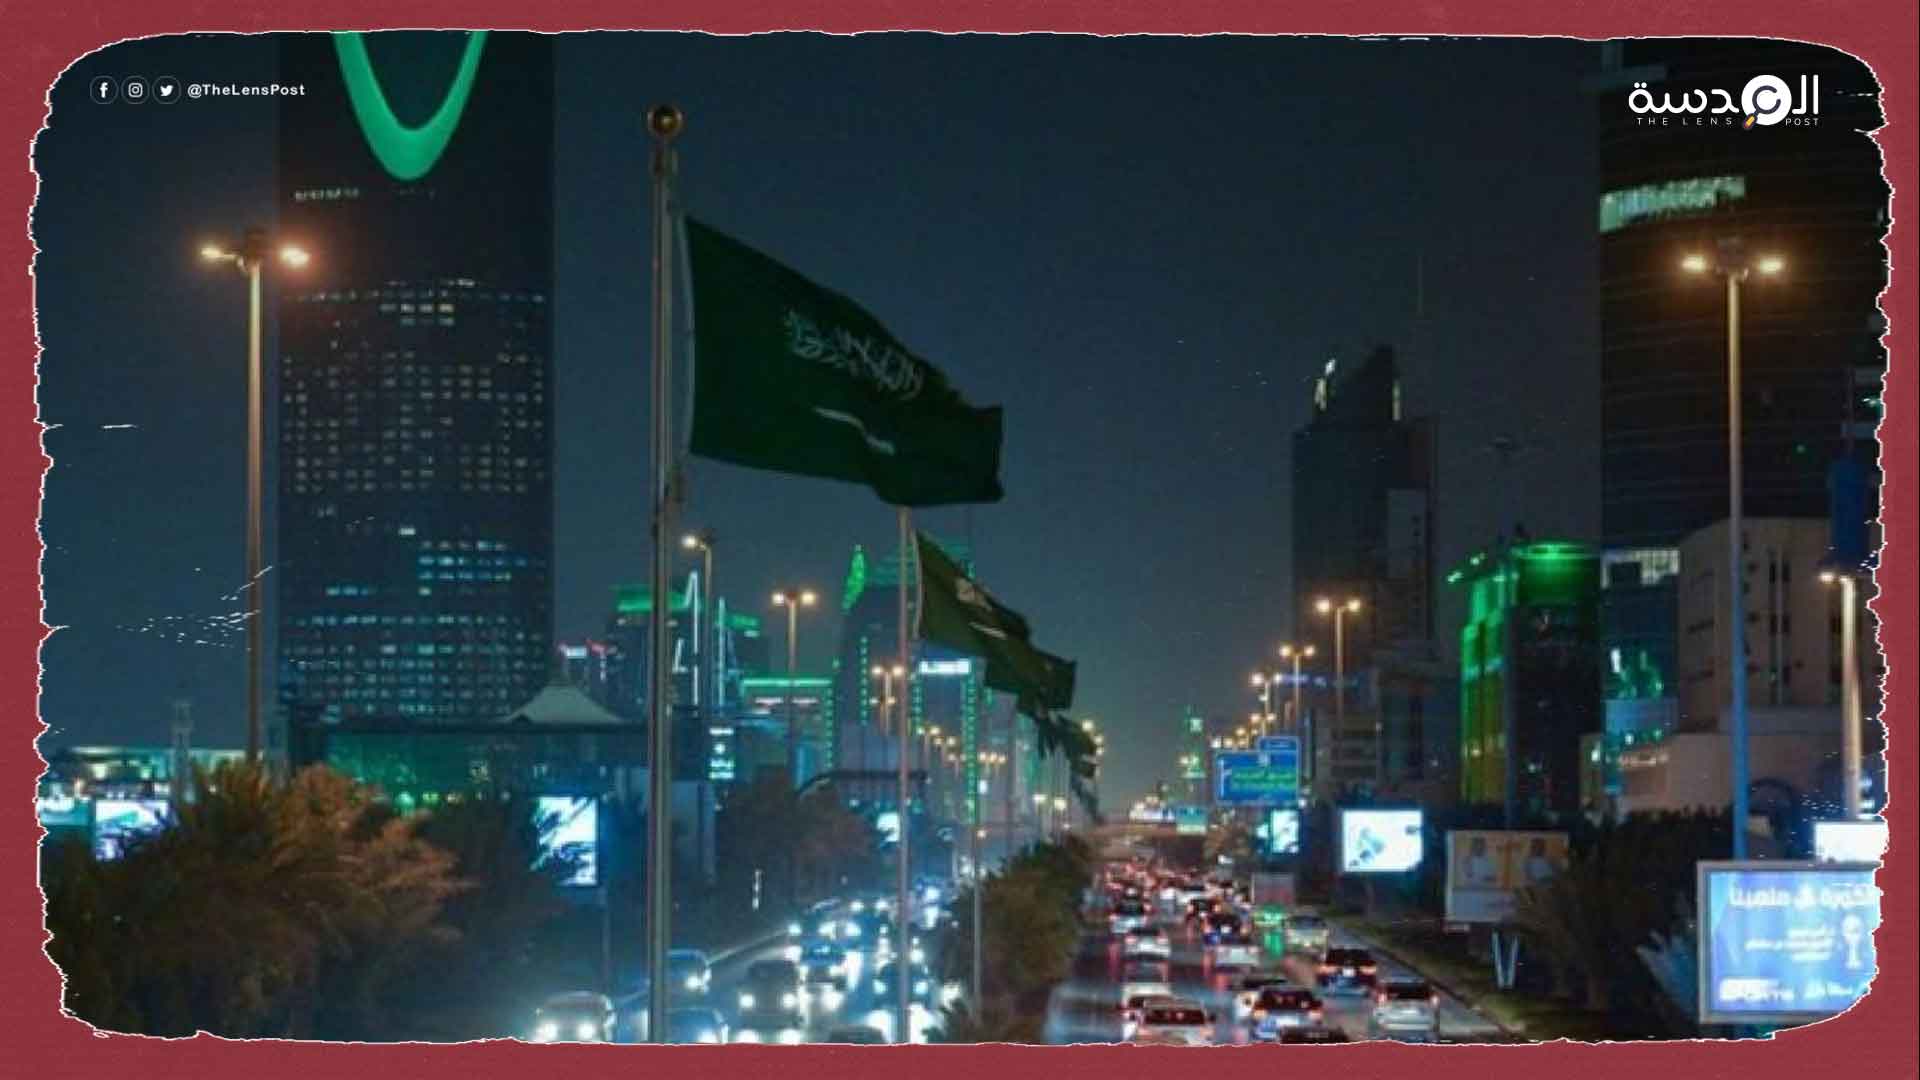 "هيومن رايتس" تدعو لوقف التحقيق مع مواطنة أمريكية في السعودية